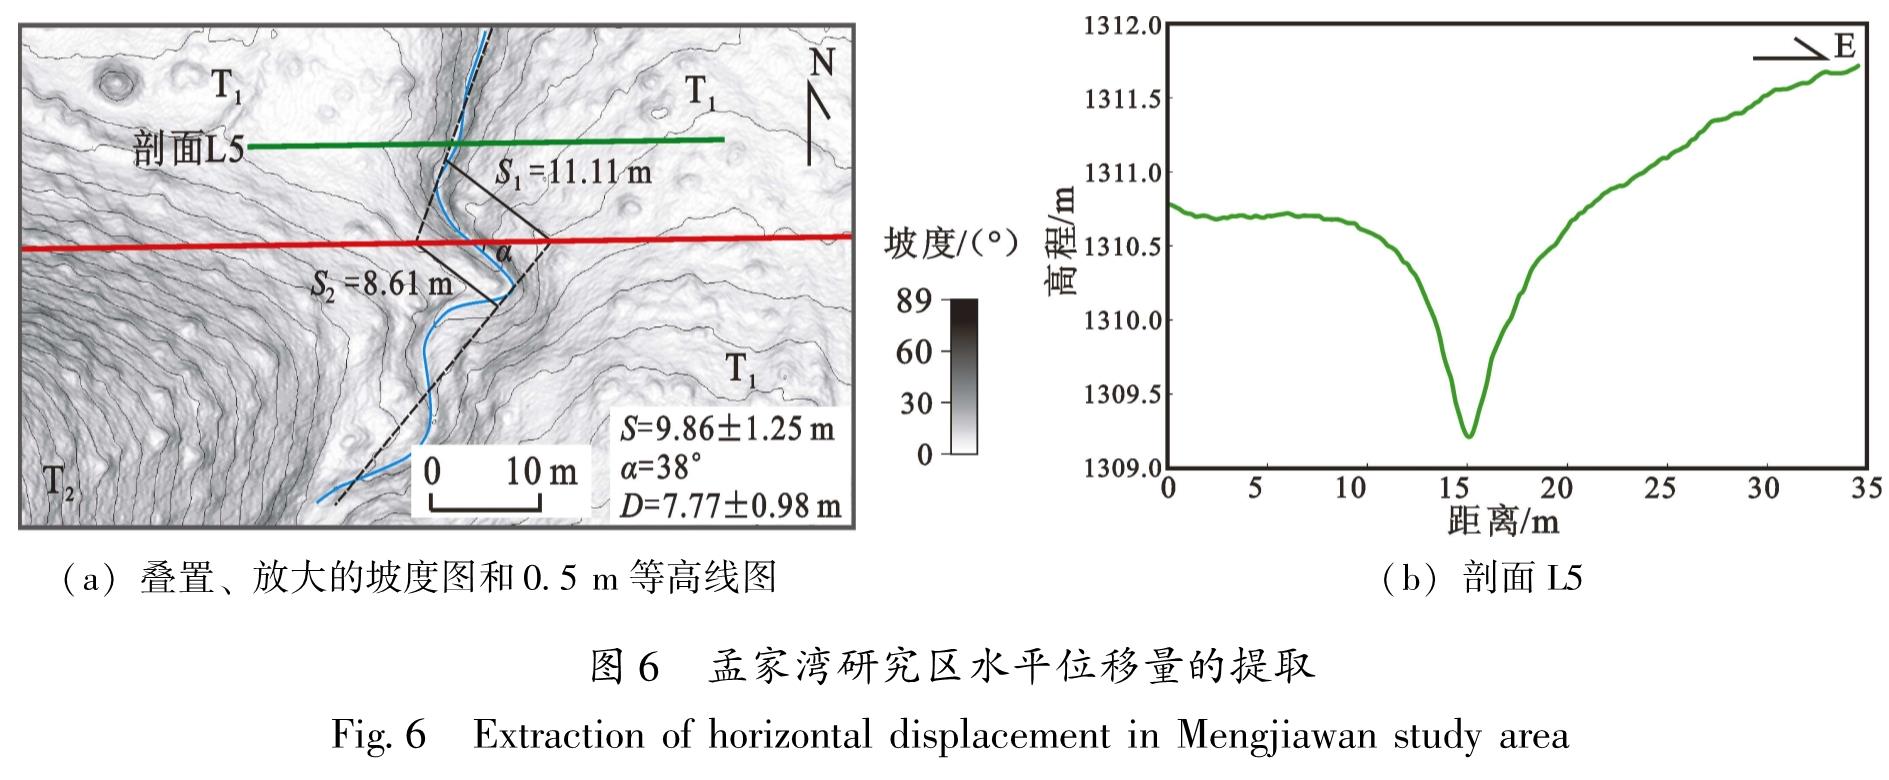 图6 孟家湾研究区水平位移量的提取<br/>Fig.6 Extraction of horizontal displacement in Mengjiawan study area